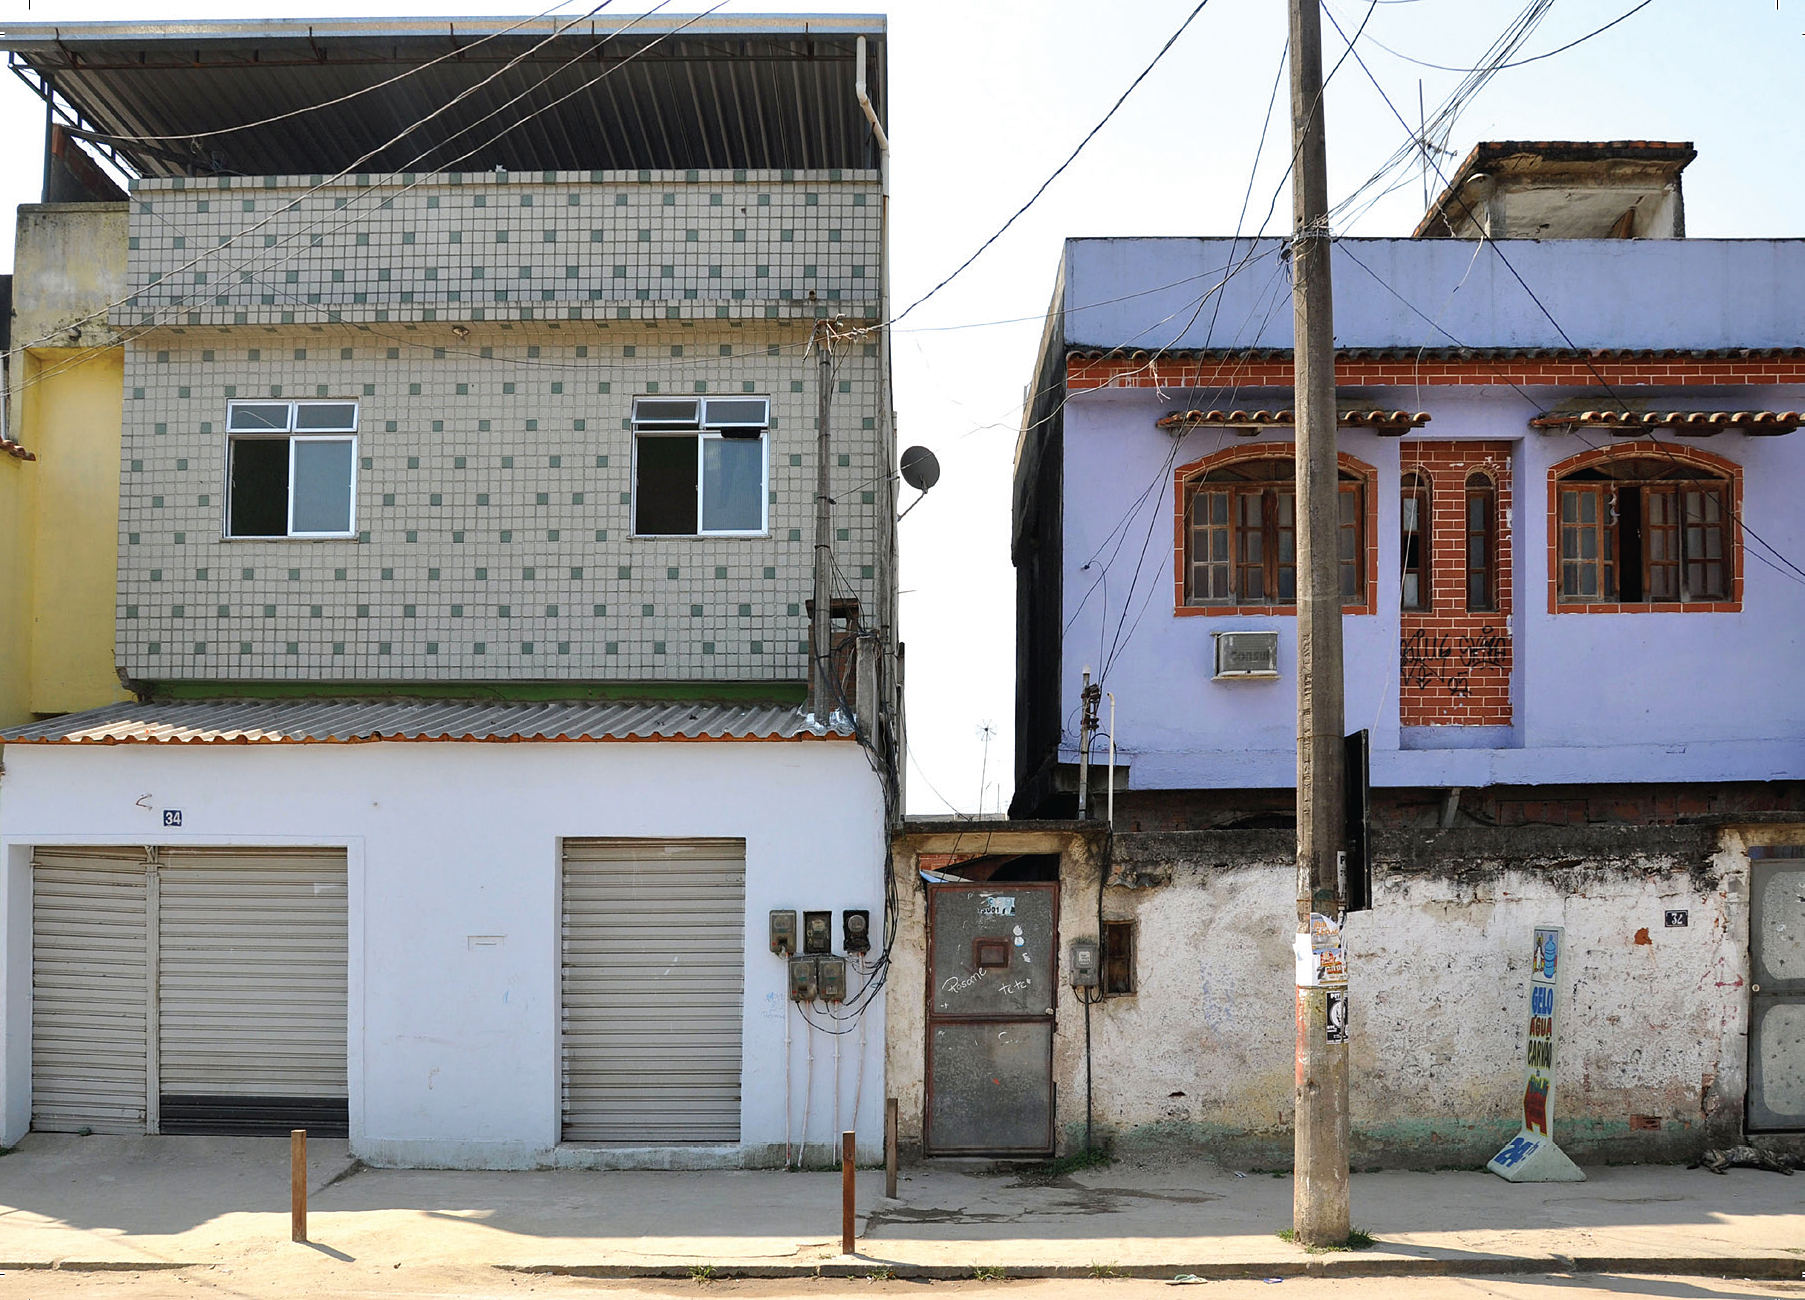 Angelil: Mass Housing Brazil